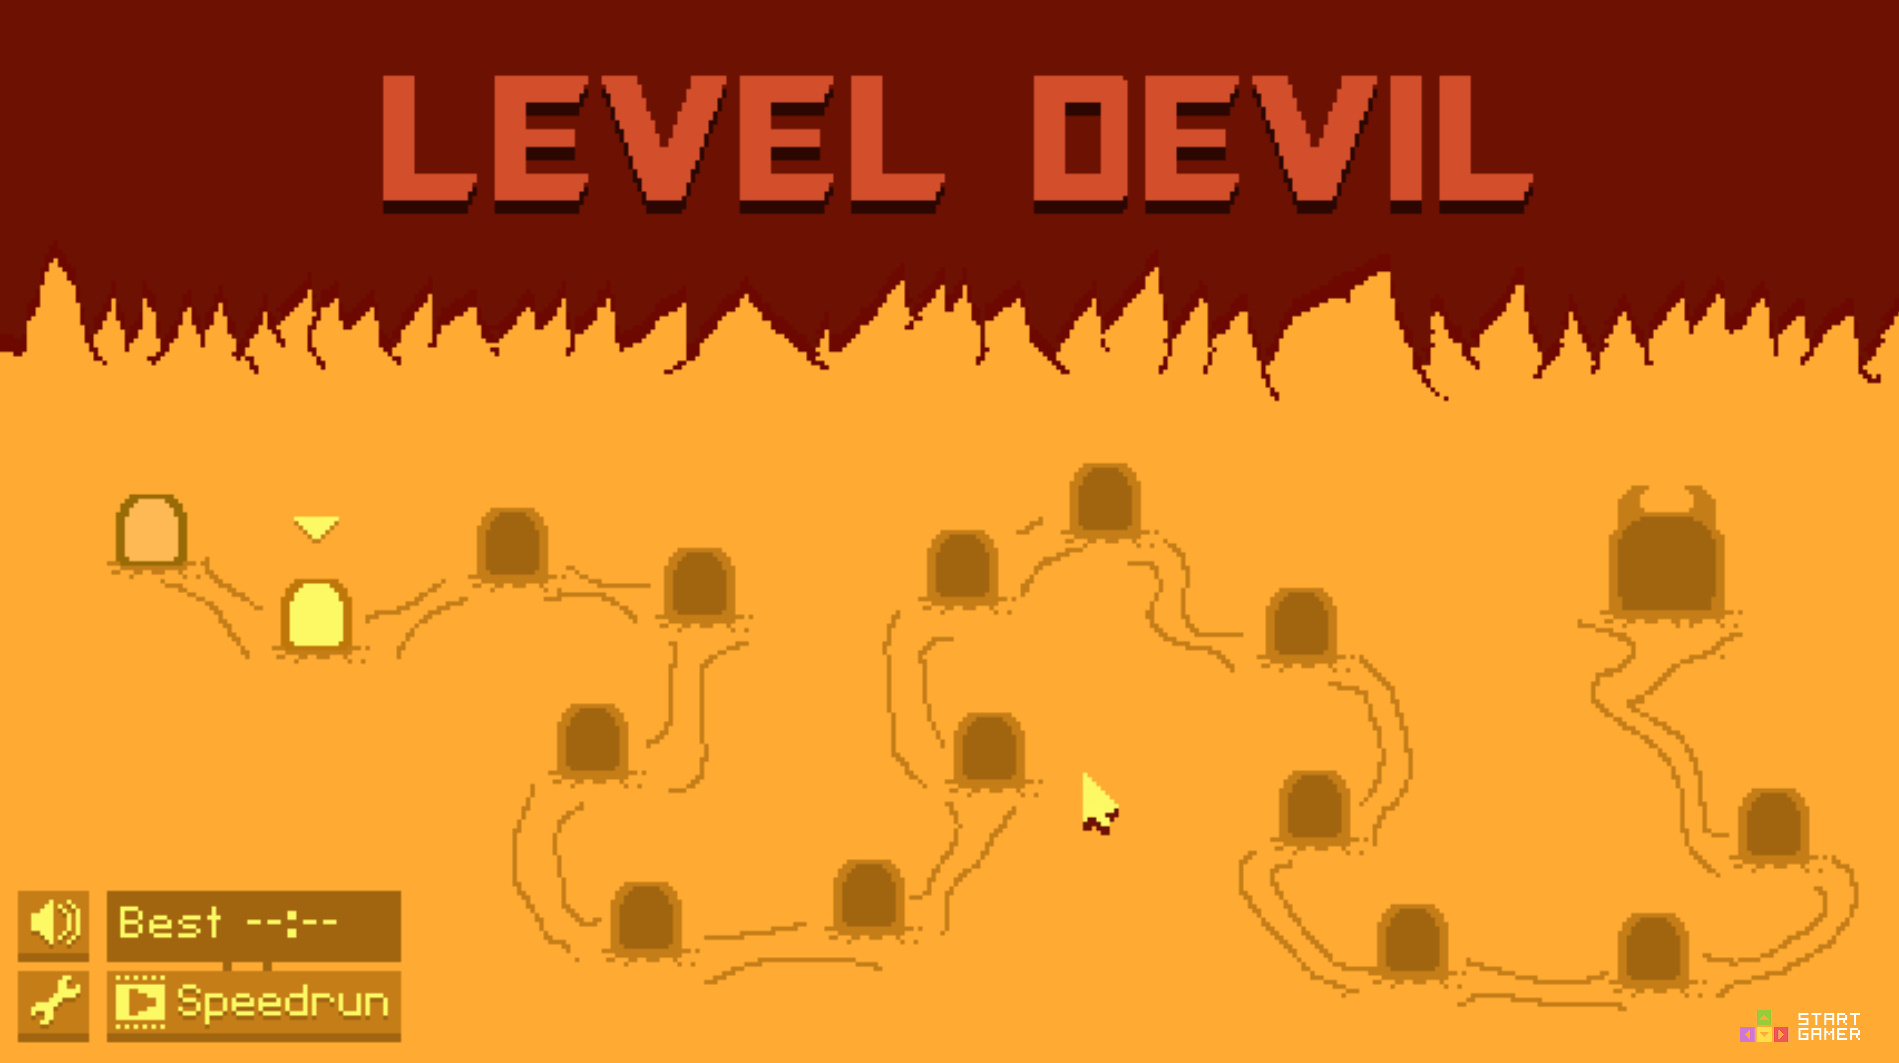 Level devil играть